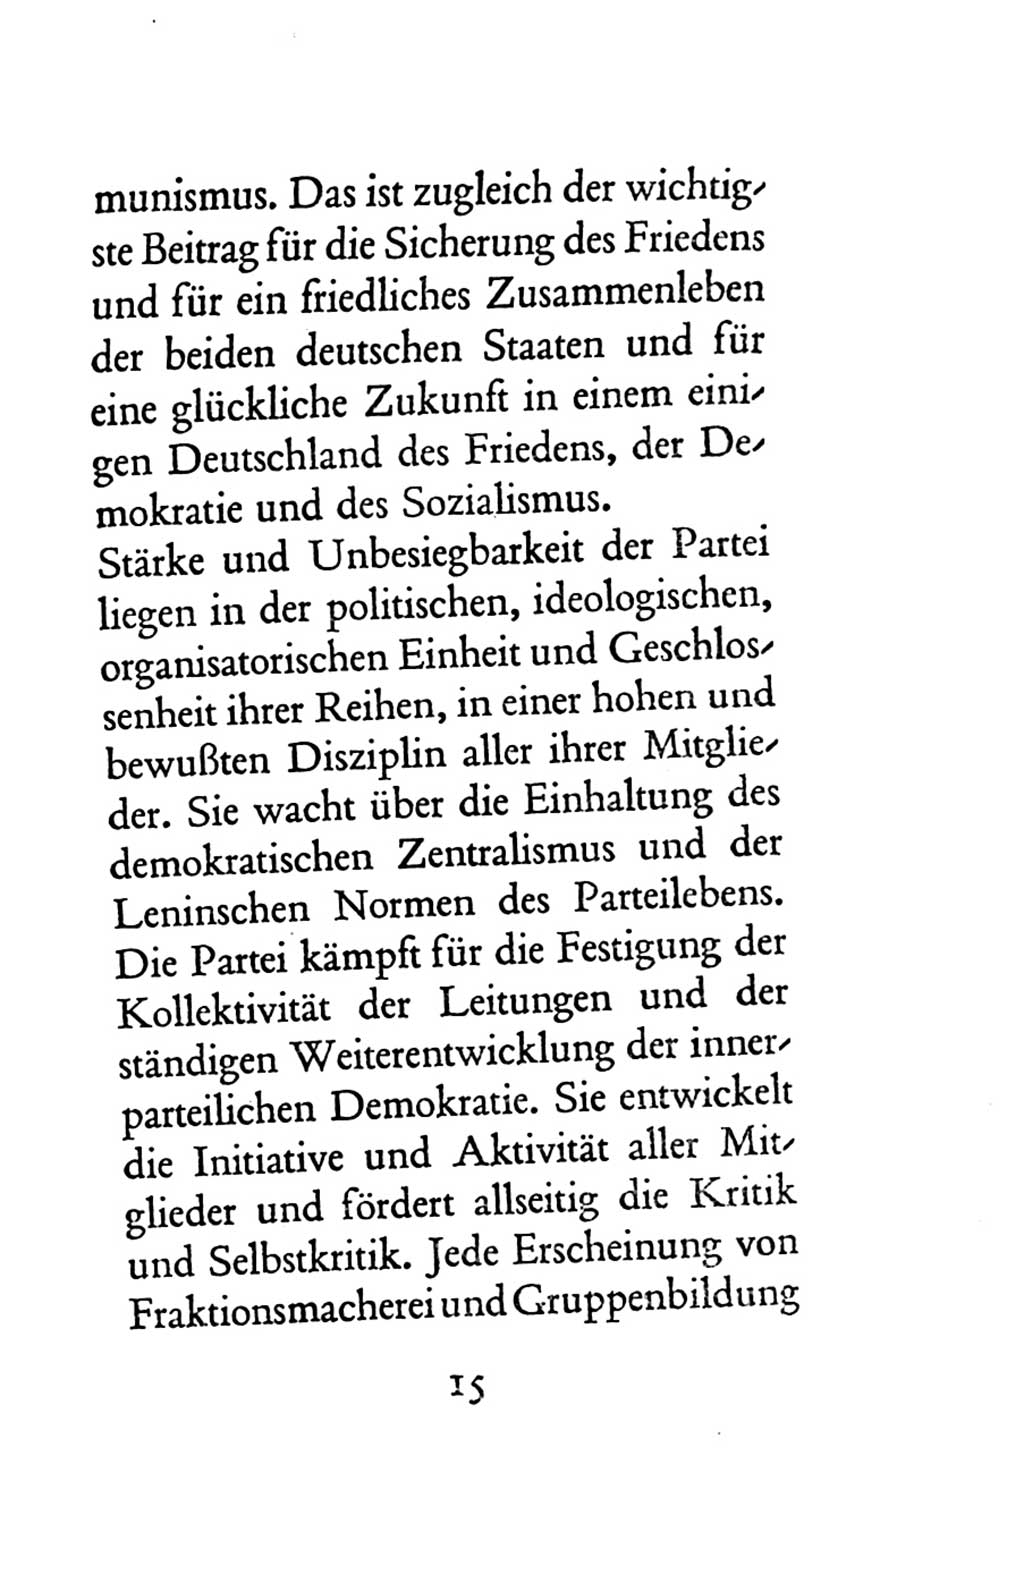 Statut der Sozialistischen Einheitspartei Deutschlands (SED) 1963, Seite 15 (St. SED DDR 1963, S. 15)